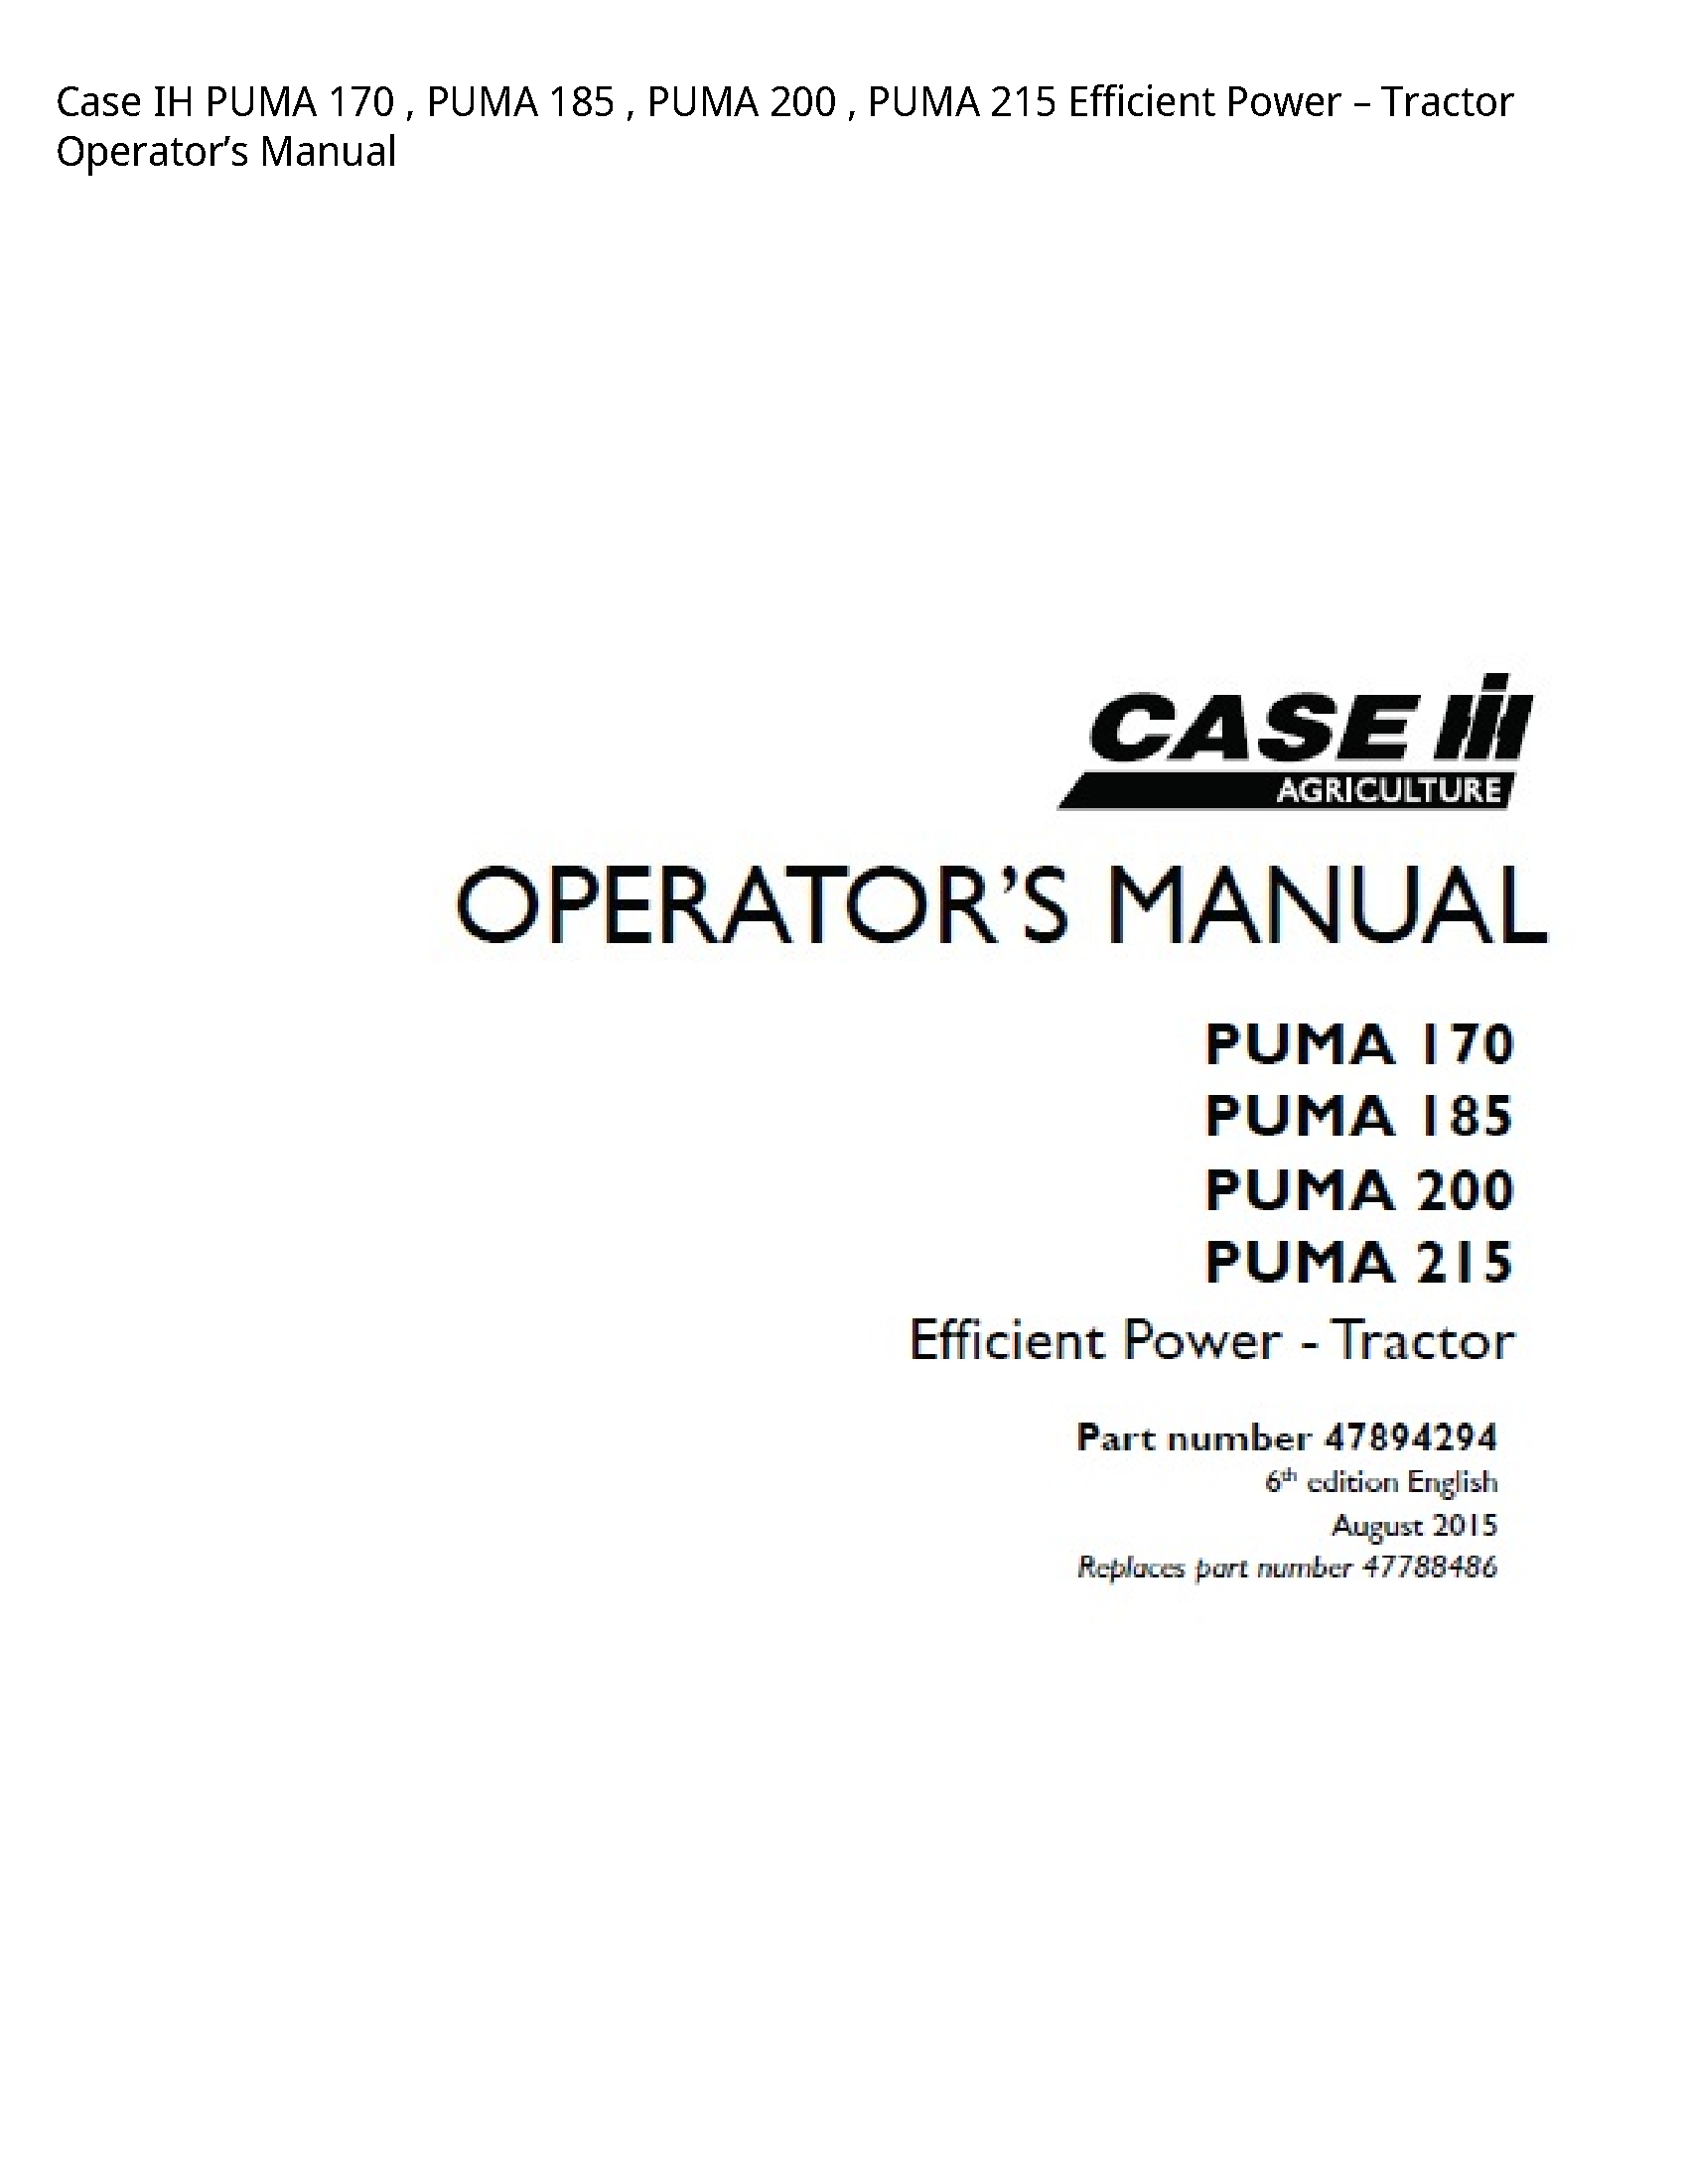 Case/Case IH 170 IH PUMA PUMA PUMA PUMA Efficient Power Tractor Operator’s manual